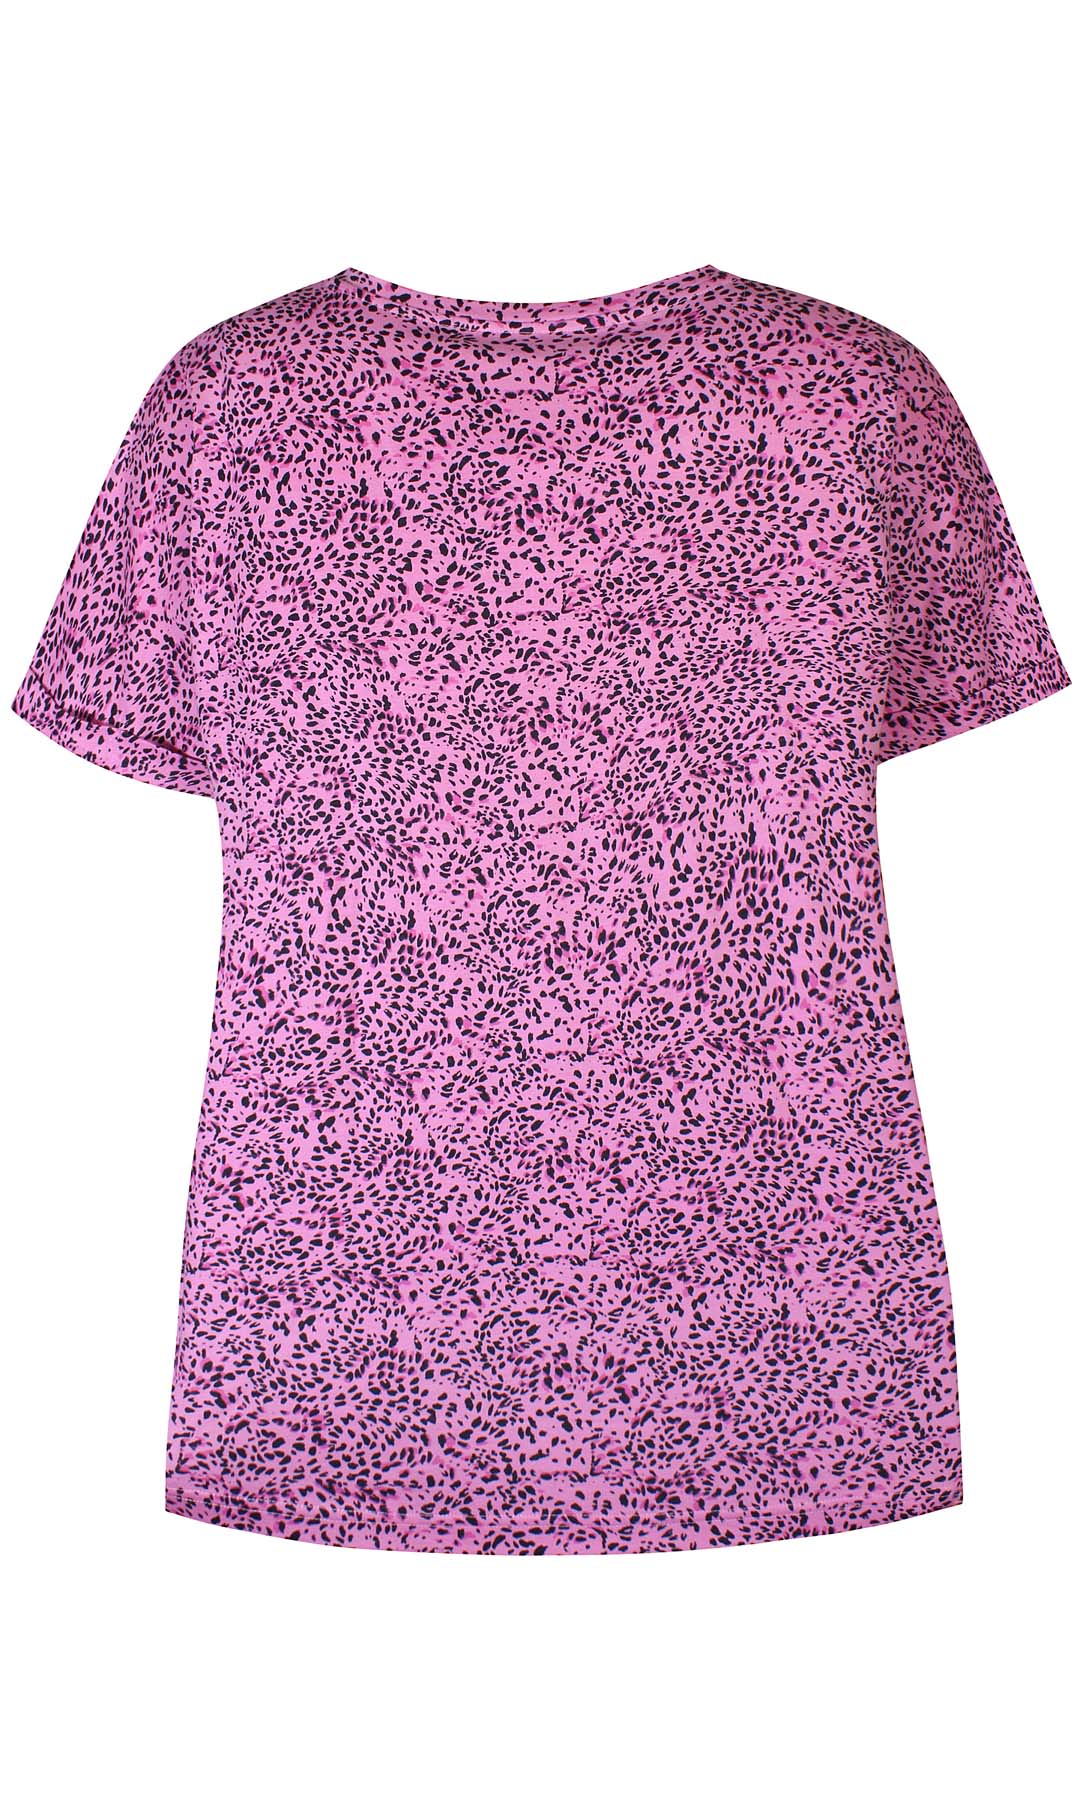 Dulce 090 - T-shirt - Pink